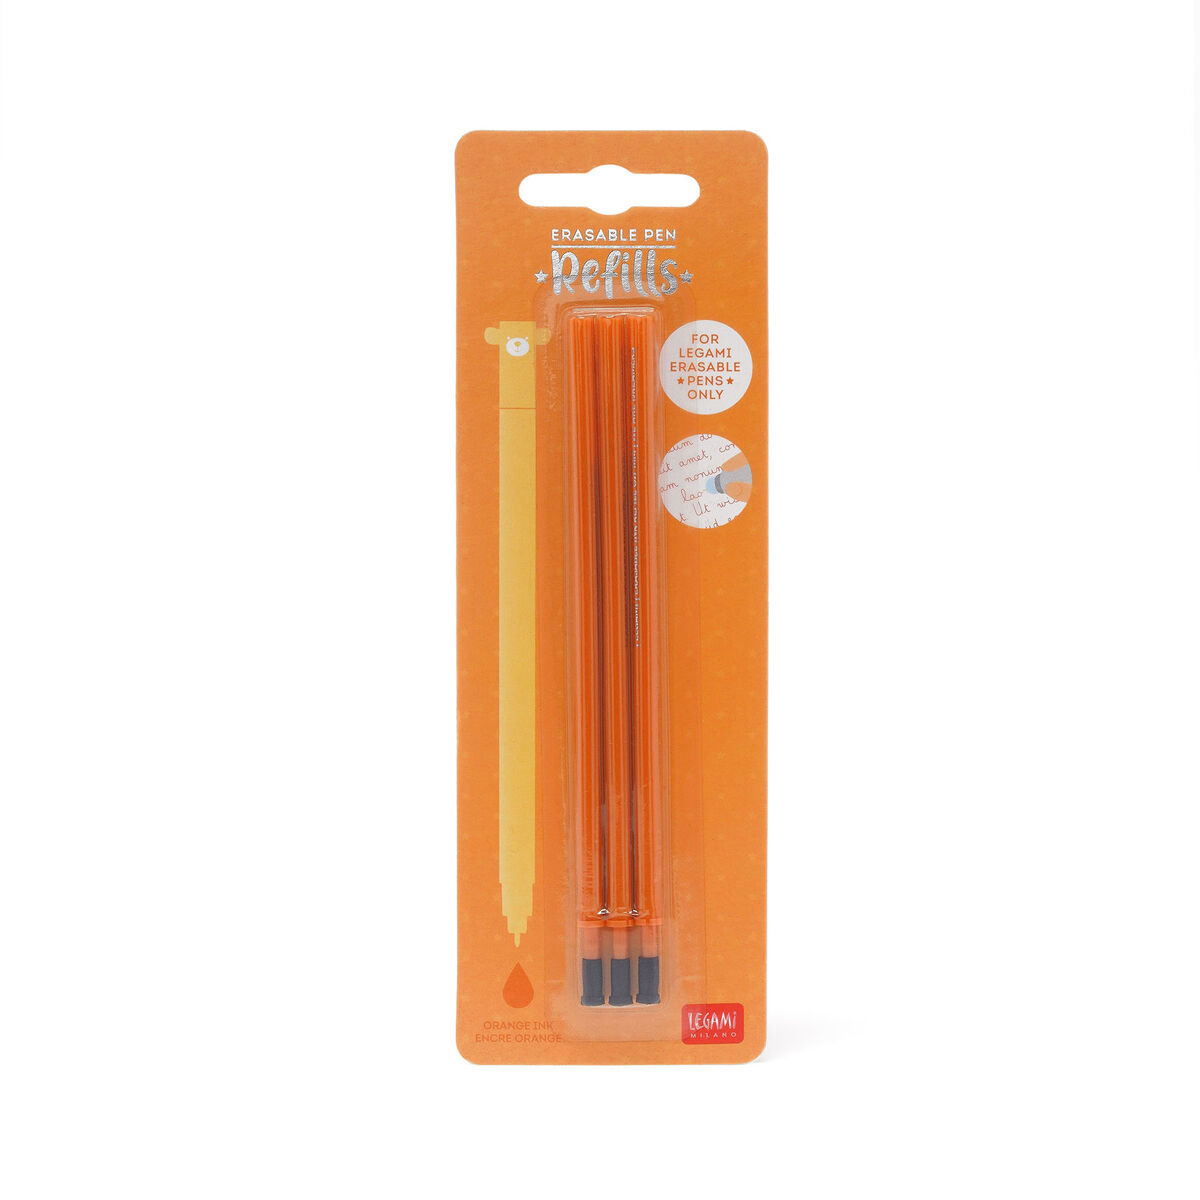 Refill per Penna Gel Cancellabile - Erasable Pen, , zoo